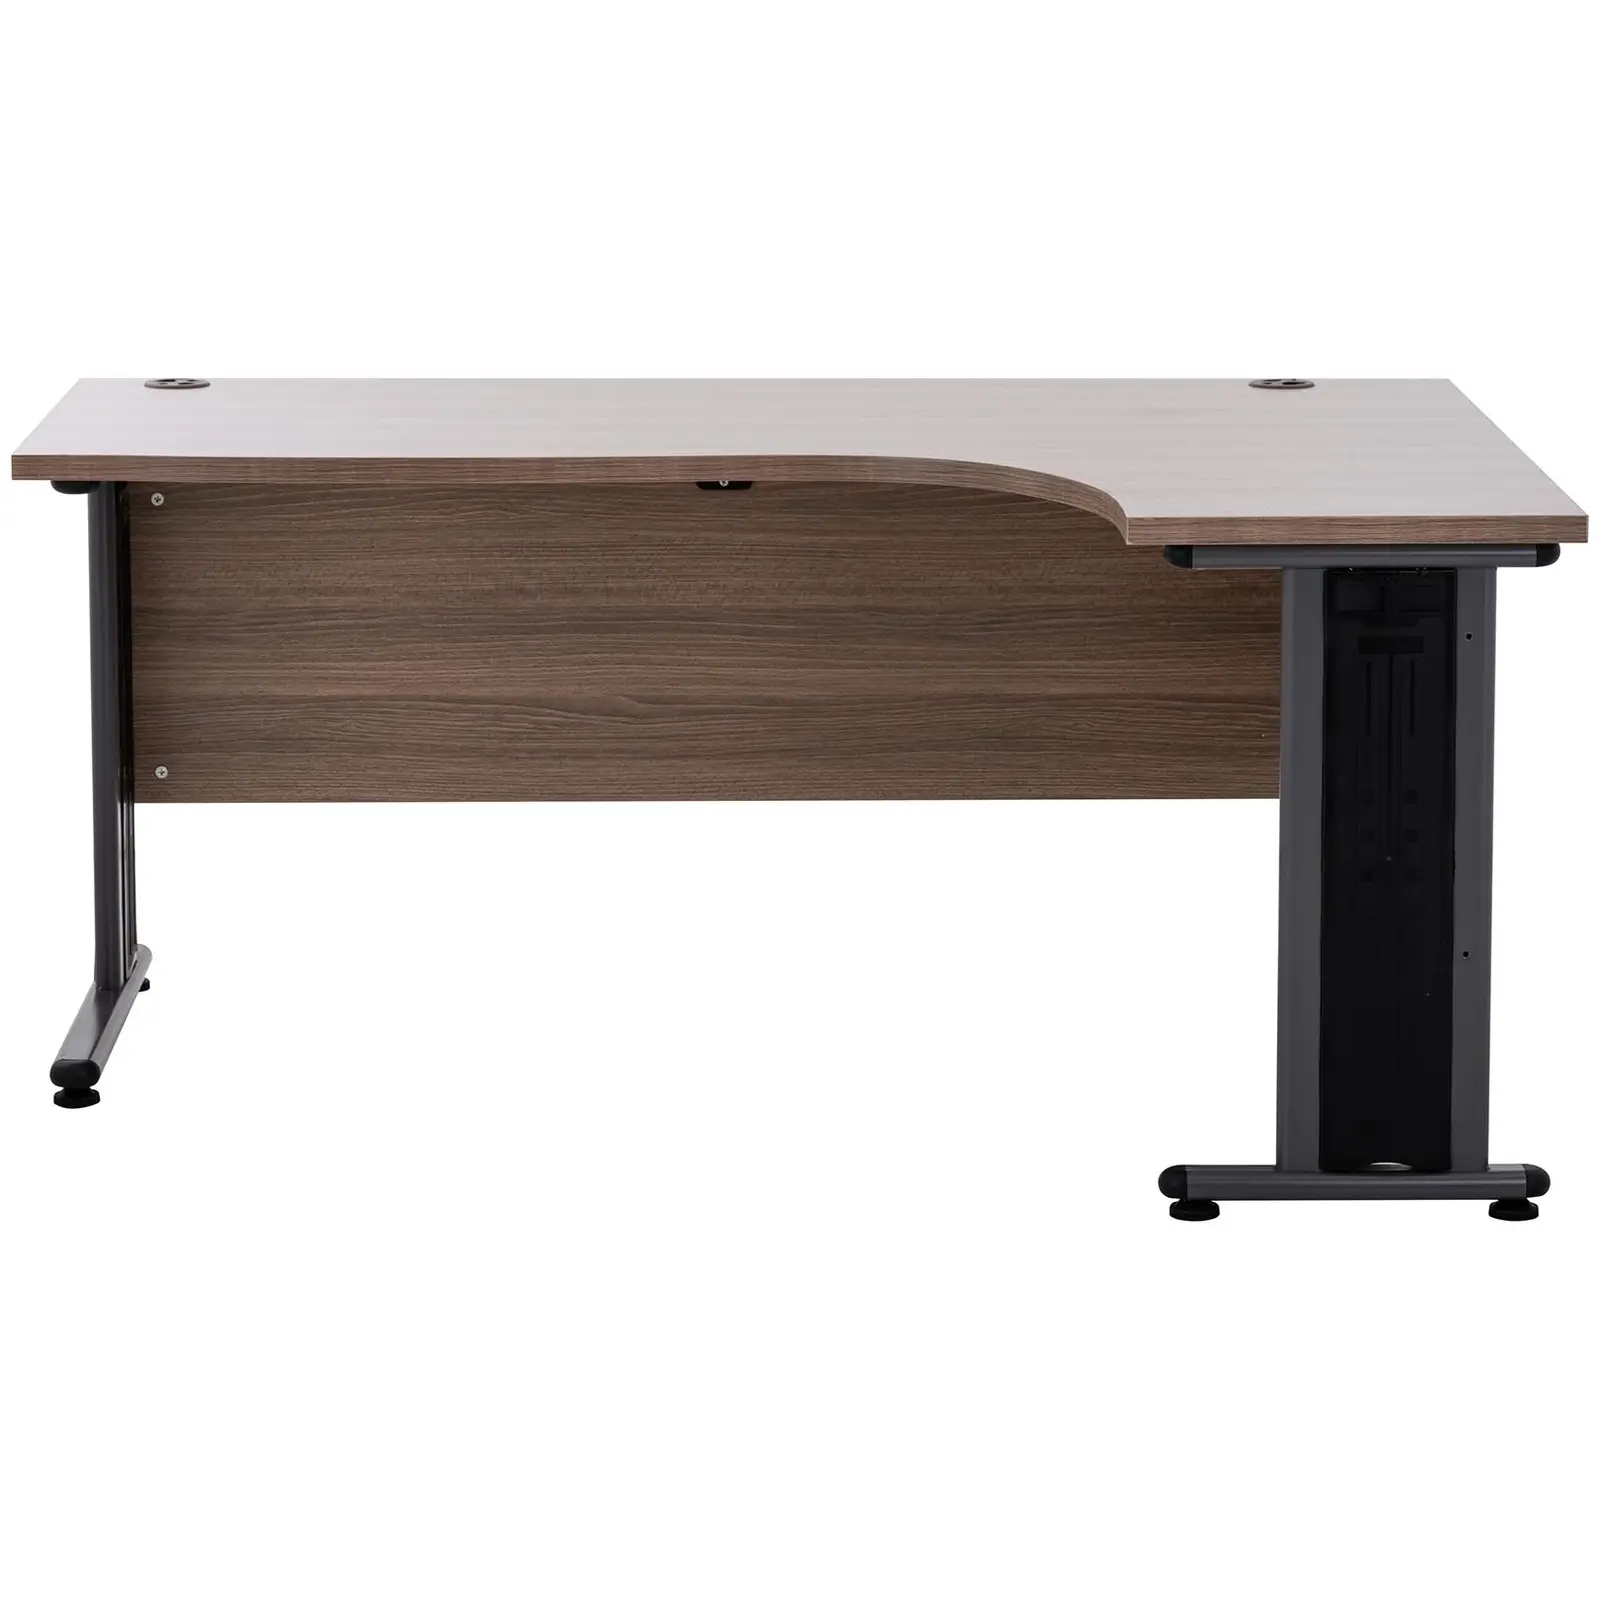 Rohový psací stůl - 160 x 120 cm - hnědá